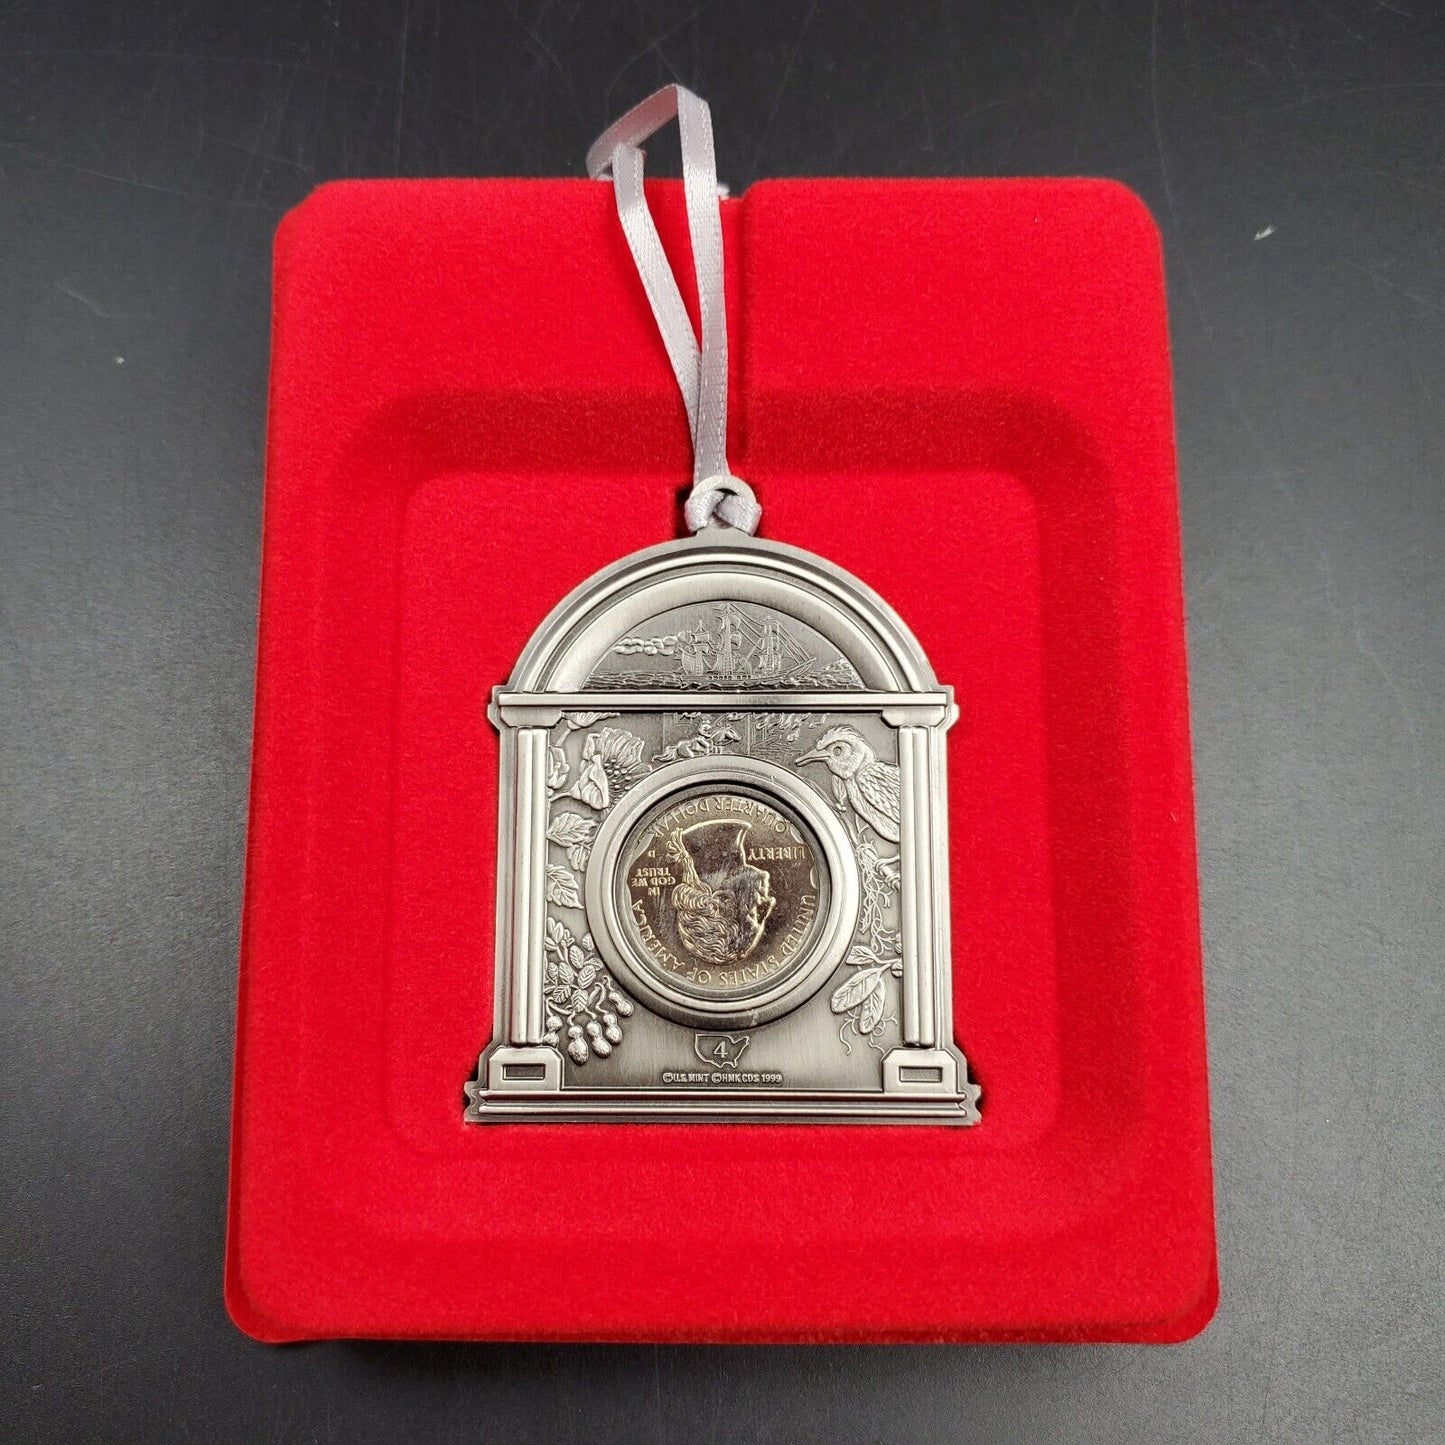 1999 Georgia State Quarter Ornament Hallmark American Spirit Collection In Box